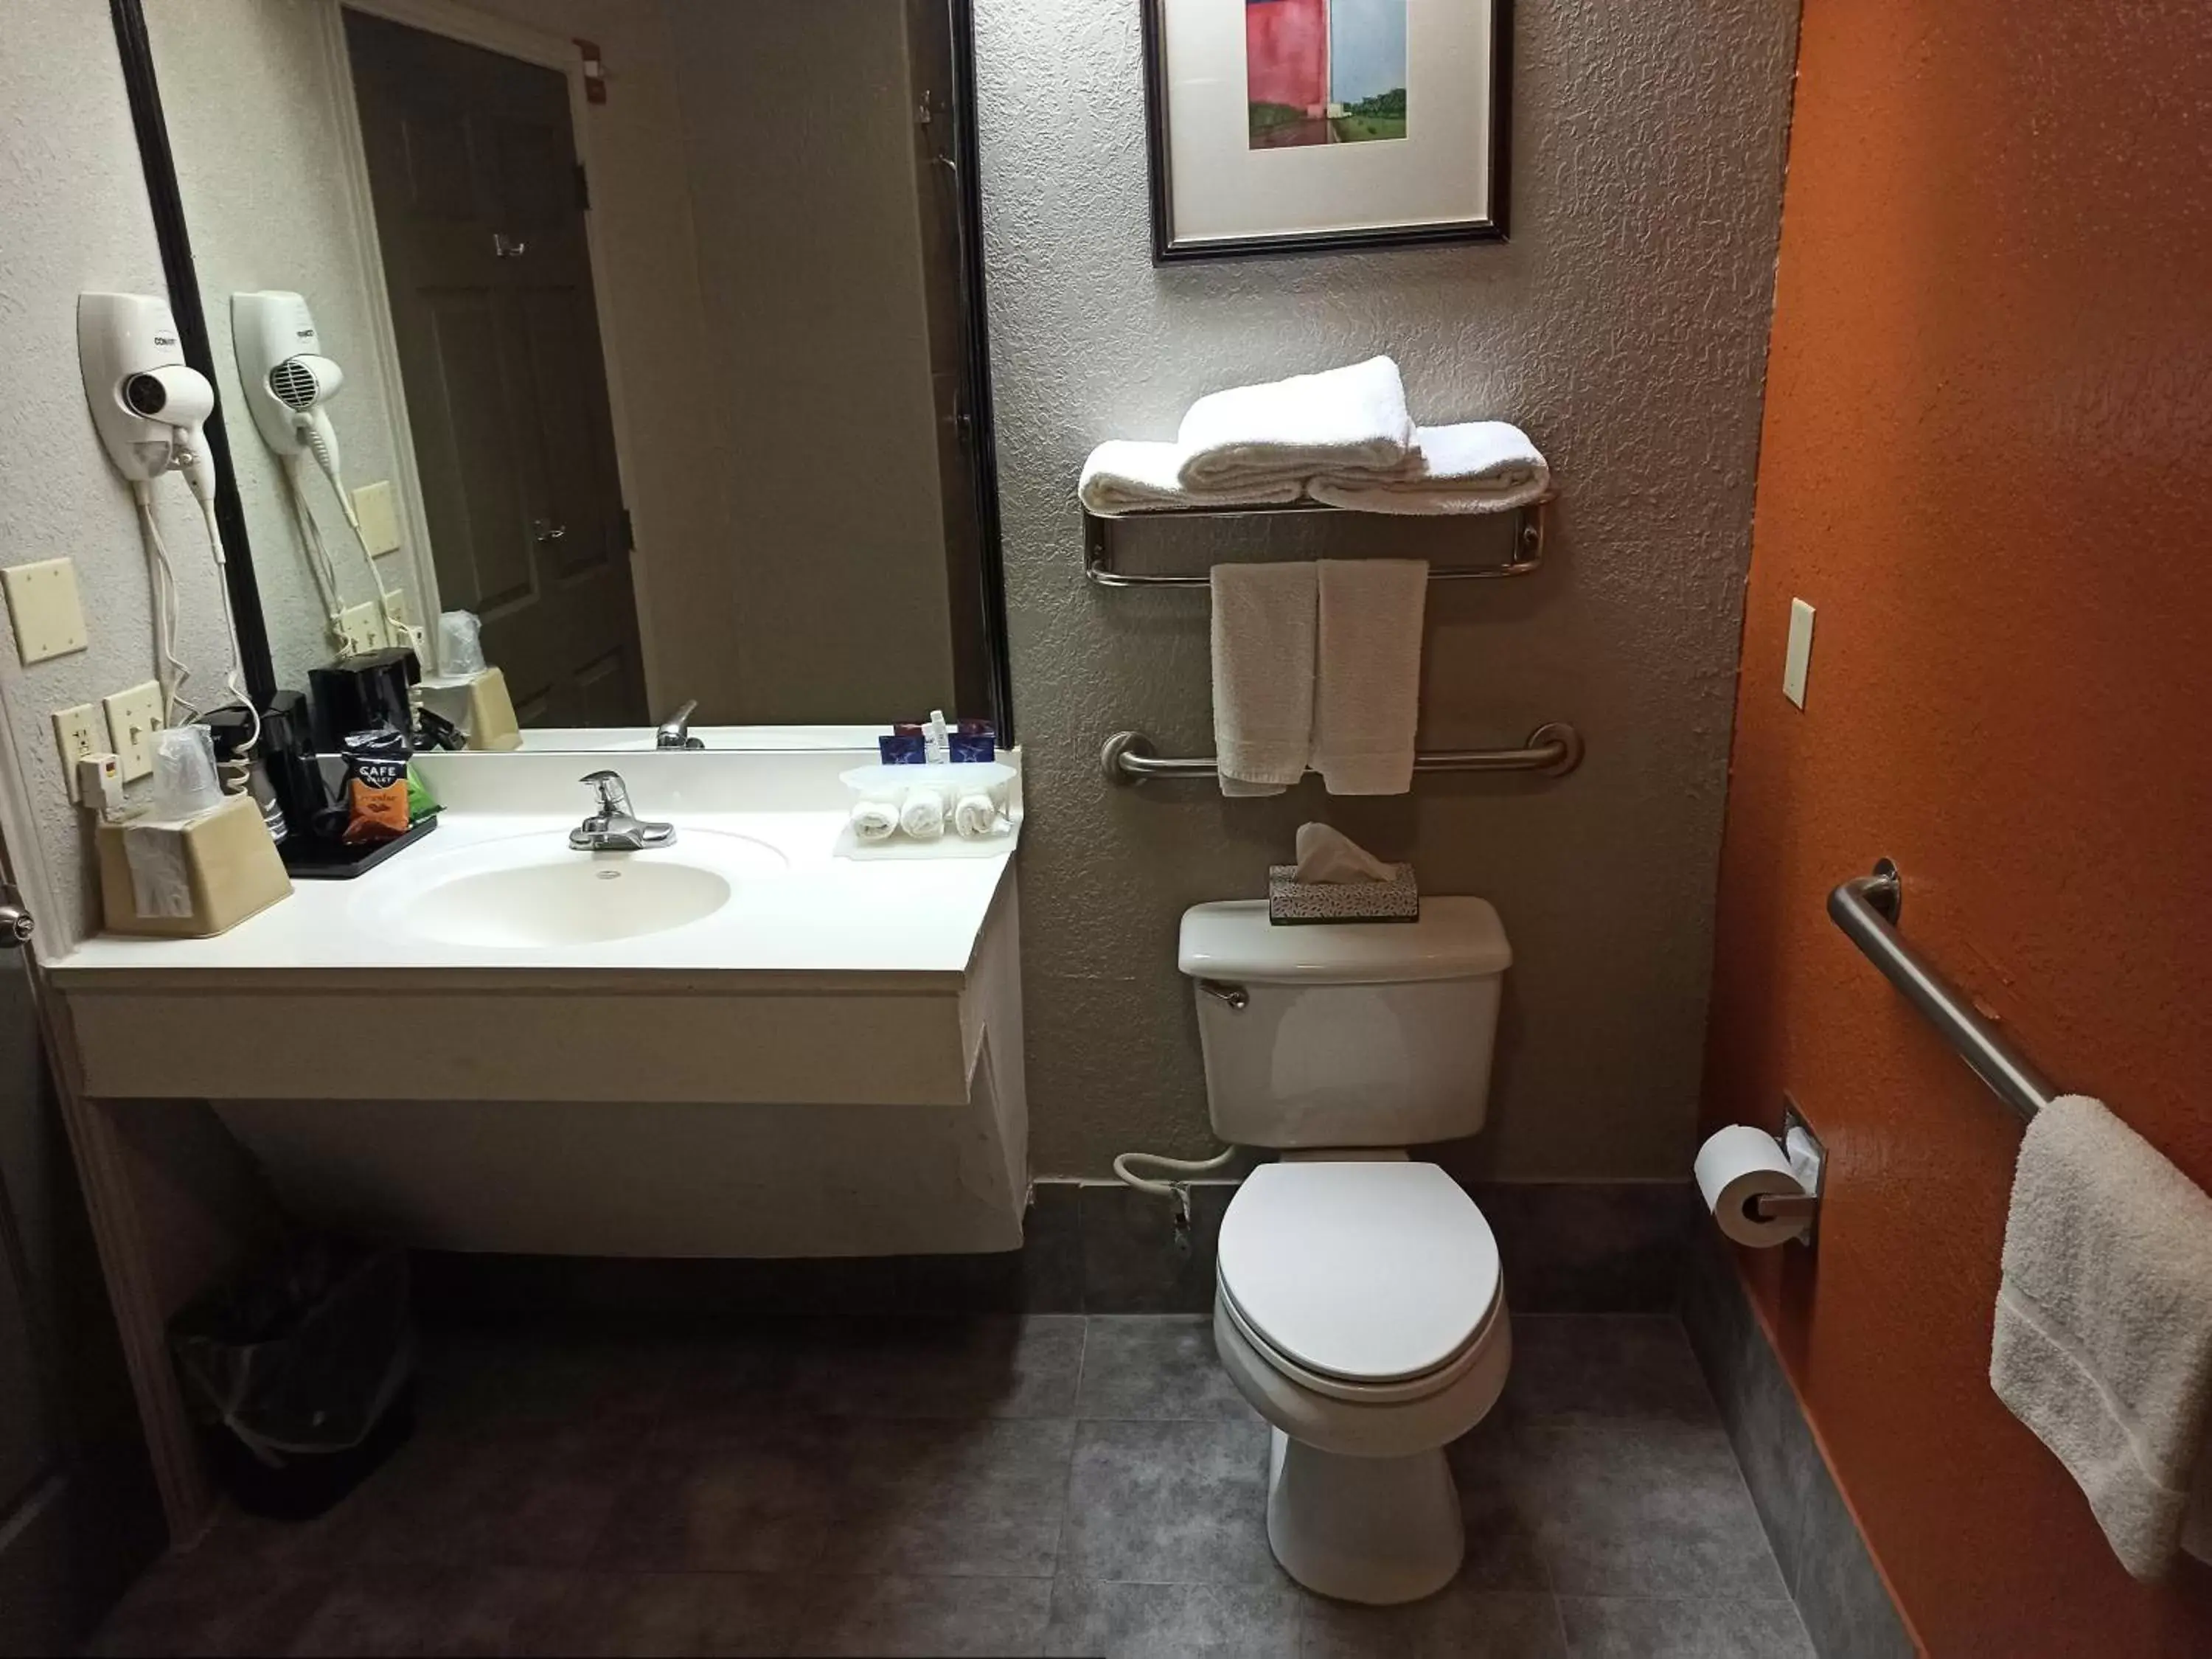 Bathroom in Americas Best Value Inn - Temple